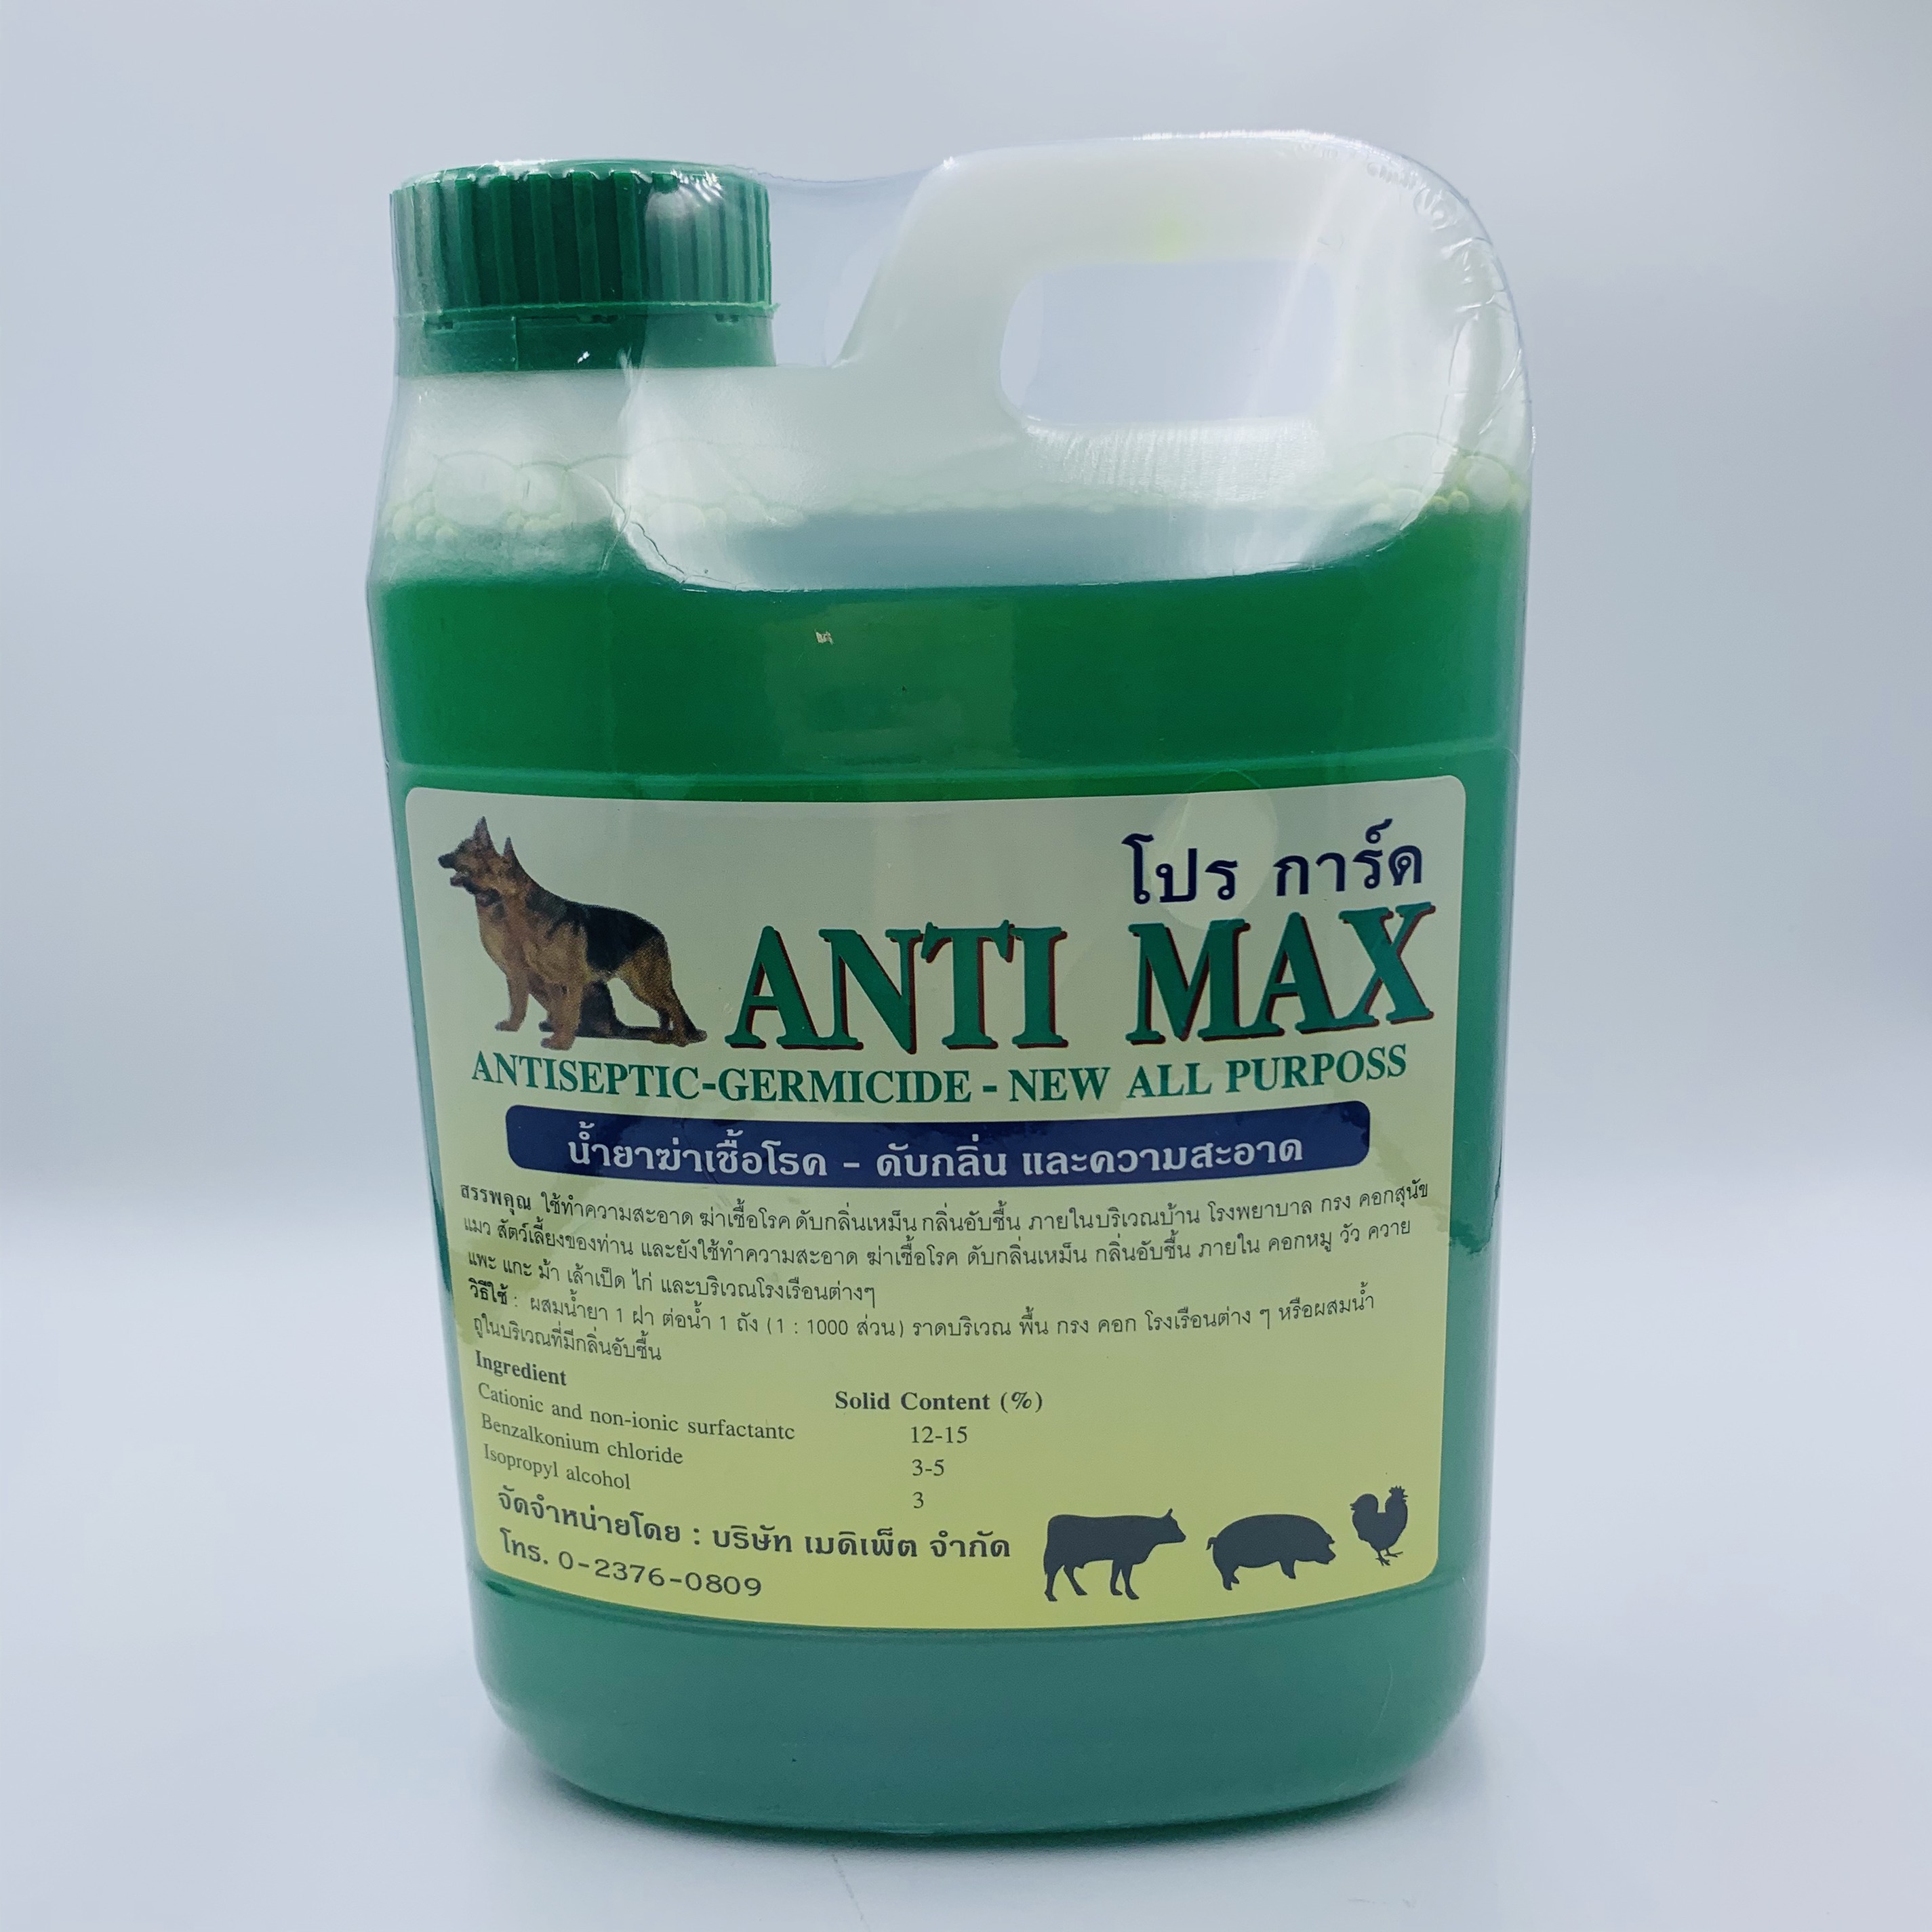 น้ำยาฆ่าเชื้อโรค-ดับกลิ่น&ทำความสะอาด  ANTI MAX(Antiseptic-Germicide)